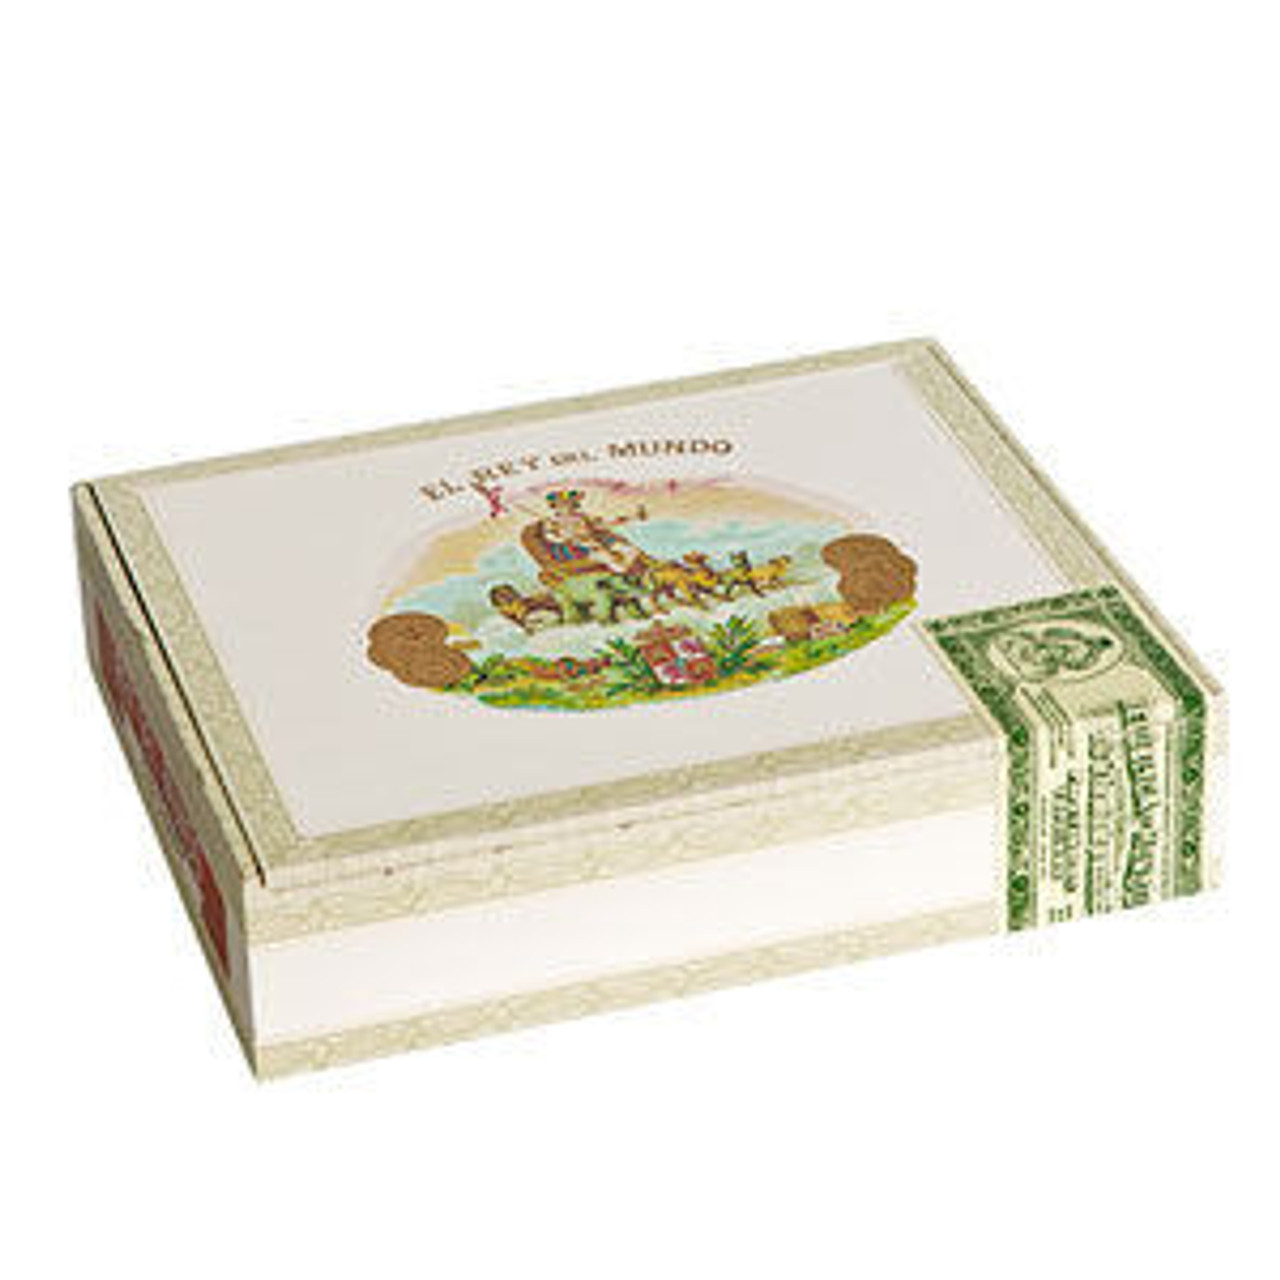 El Rey del Mundo Corona Cigars - 5.62 x 45 (Box of 20) *Box